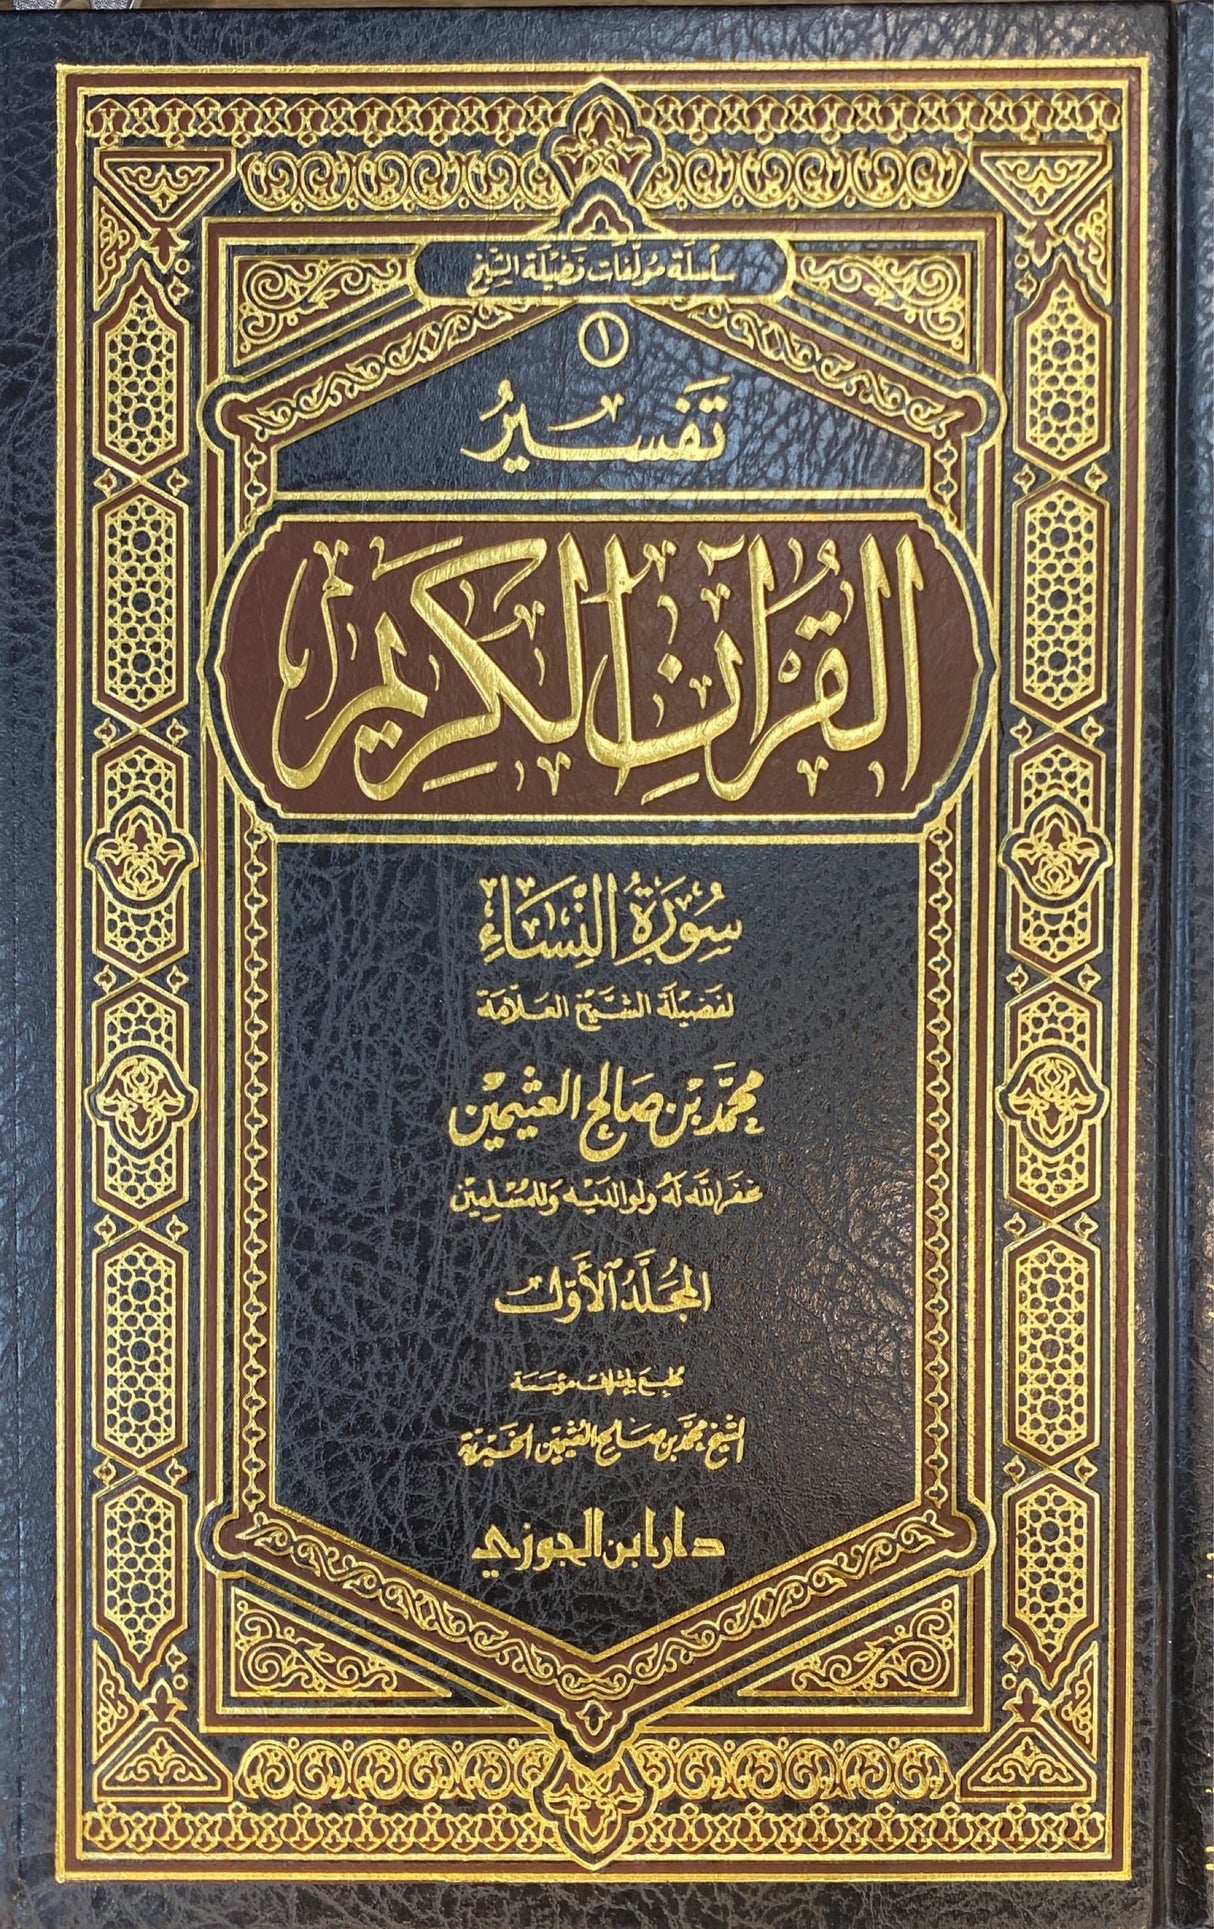 تفسير القران الكريم - سورة النساء    Tafsir Al Quran al Karim - Surah An Nisa (2 Volume Set)